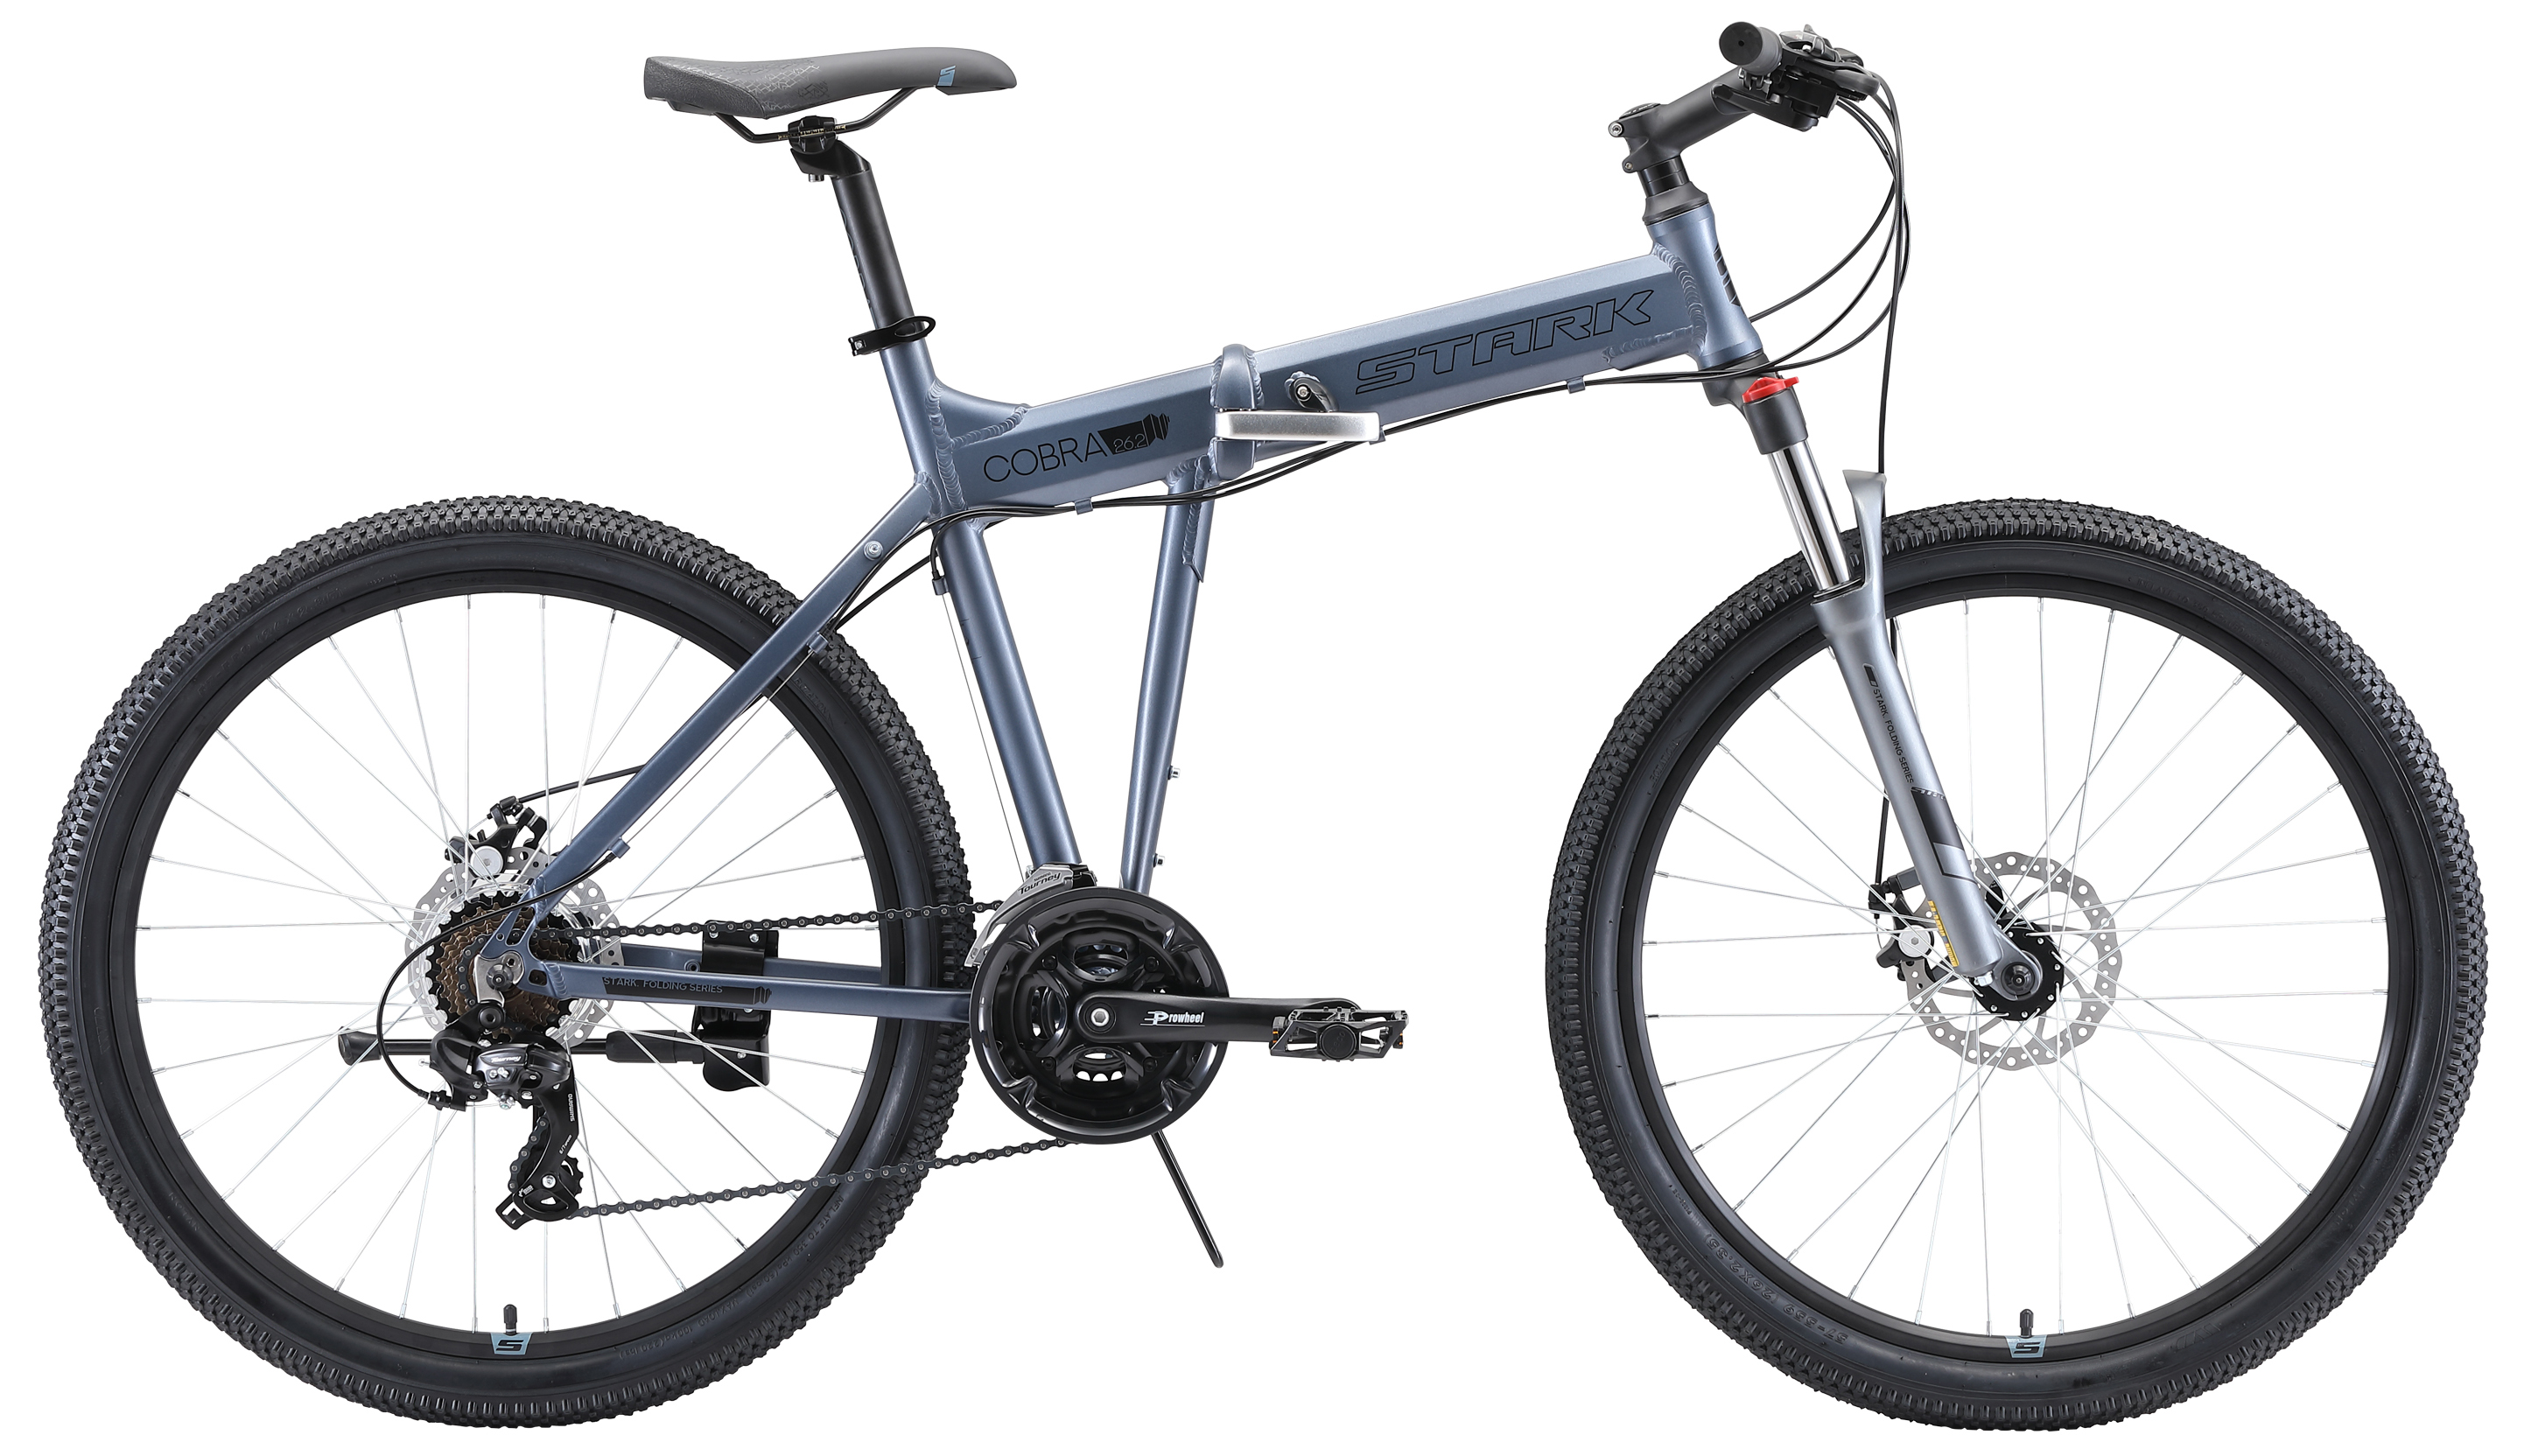  Отзывы о Складном велосипеде Stark Cobra 26.2 D 2020